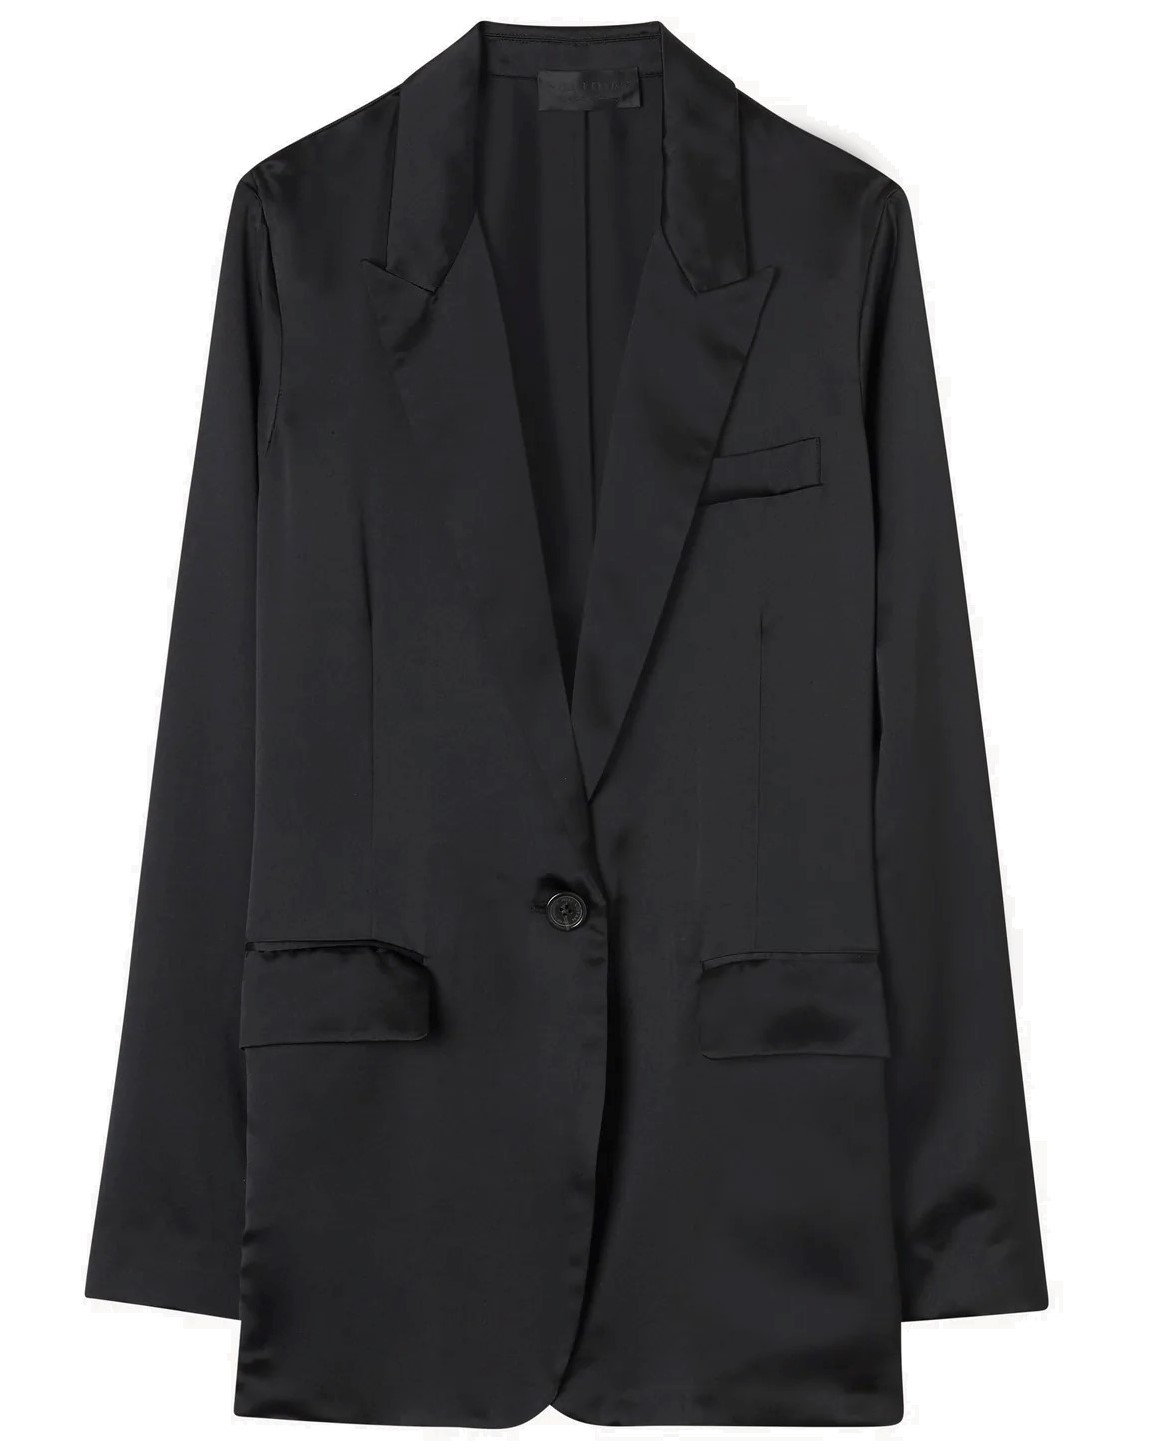 NILI LOTAN Eveline Silk Blazer in Black 2/S